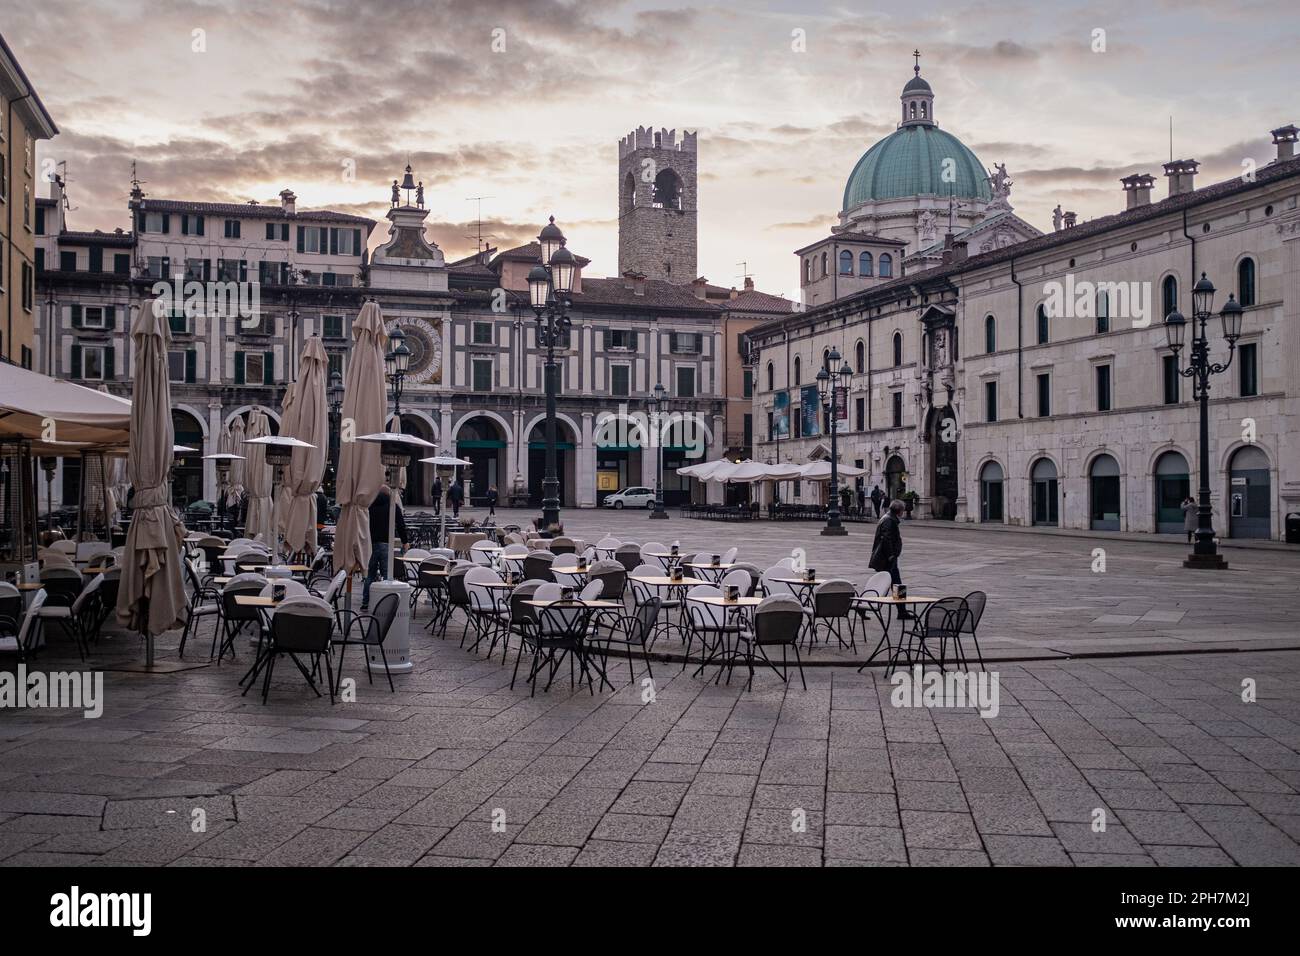 Ein Blick auf die Piazza della Loggia in Brescia (Italien) bei Sonnenaufgang am Morgen. Die Renaissance-Arkaden und der Turm mit der Uhr im Hintergrund. Stockfoto